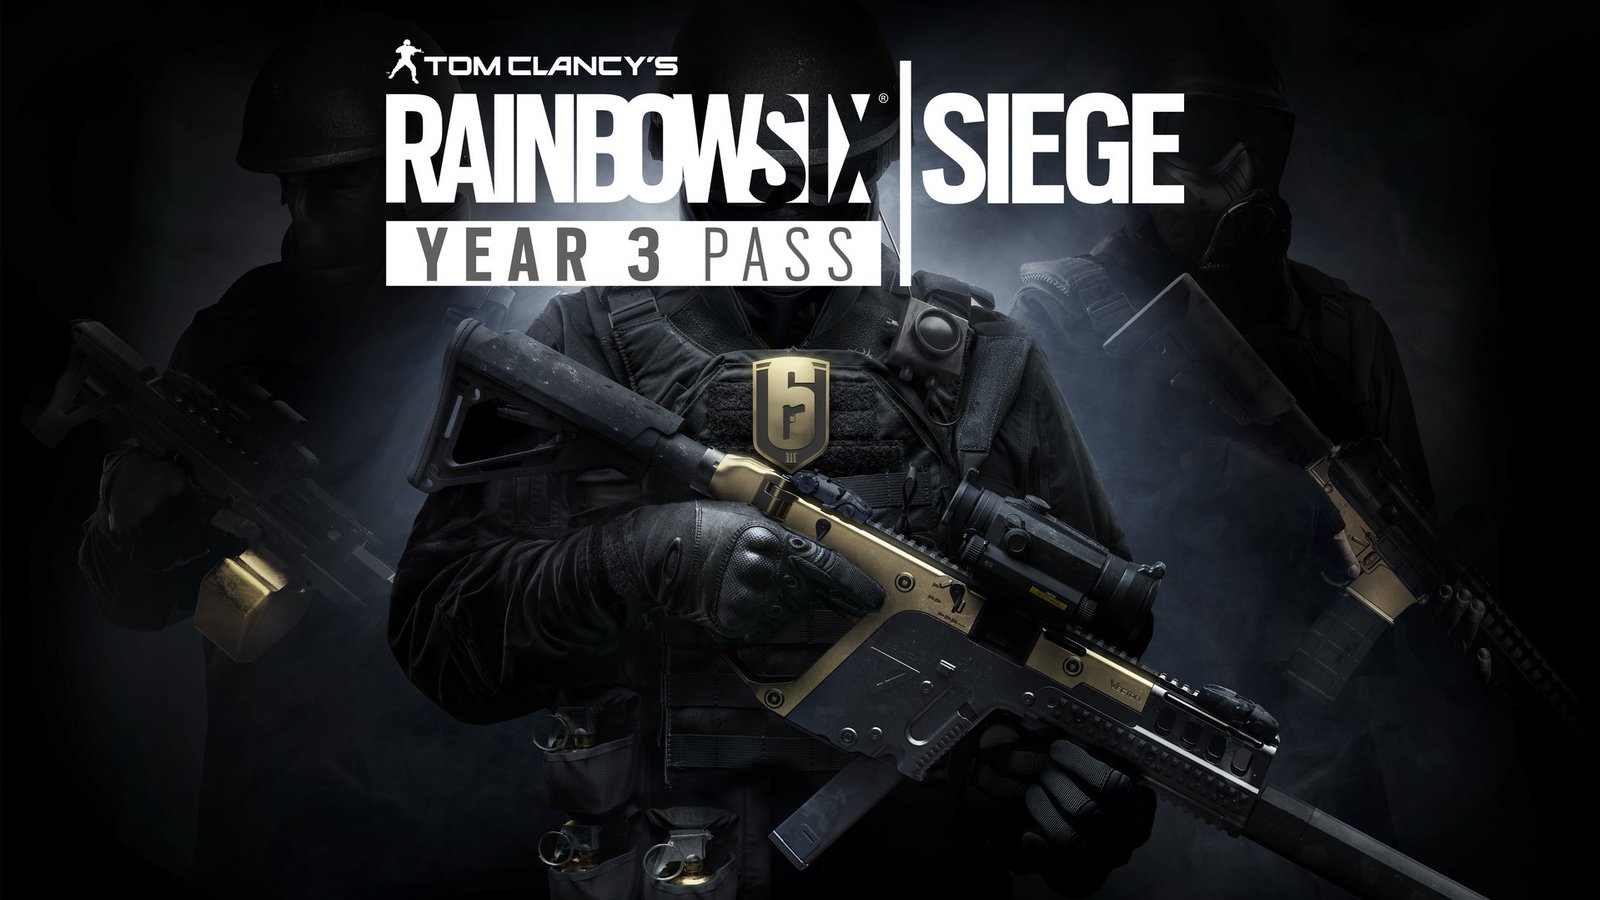 Tom Clancy's Rainbow Six: Siege - Year 3 Pass